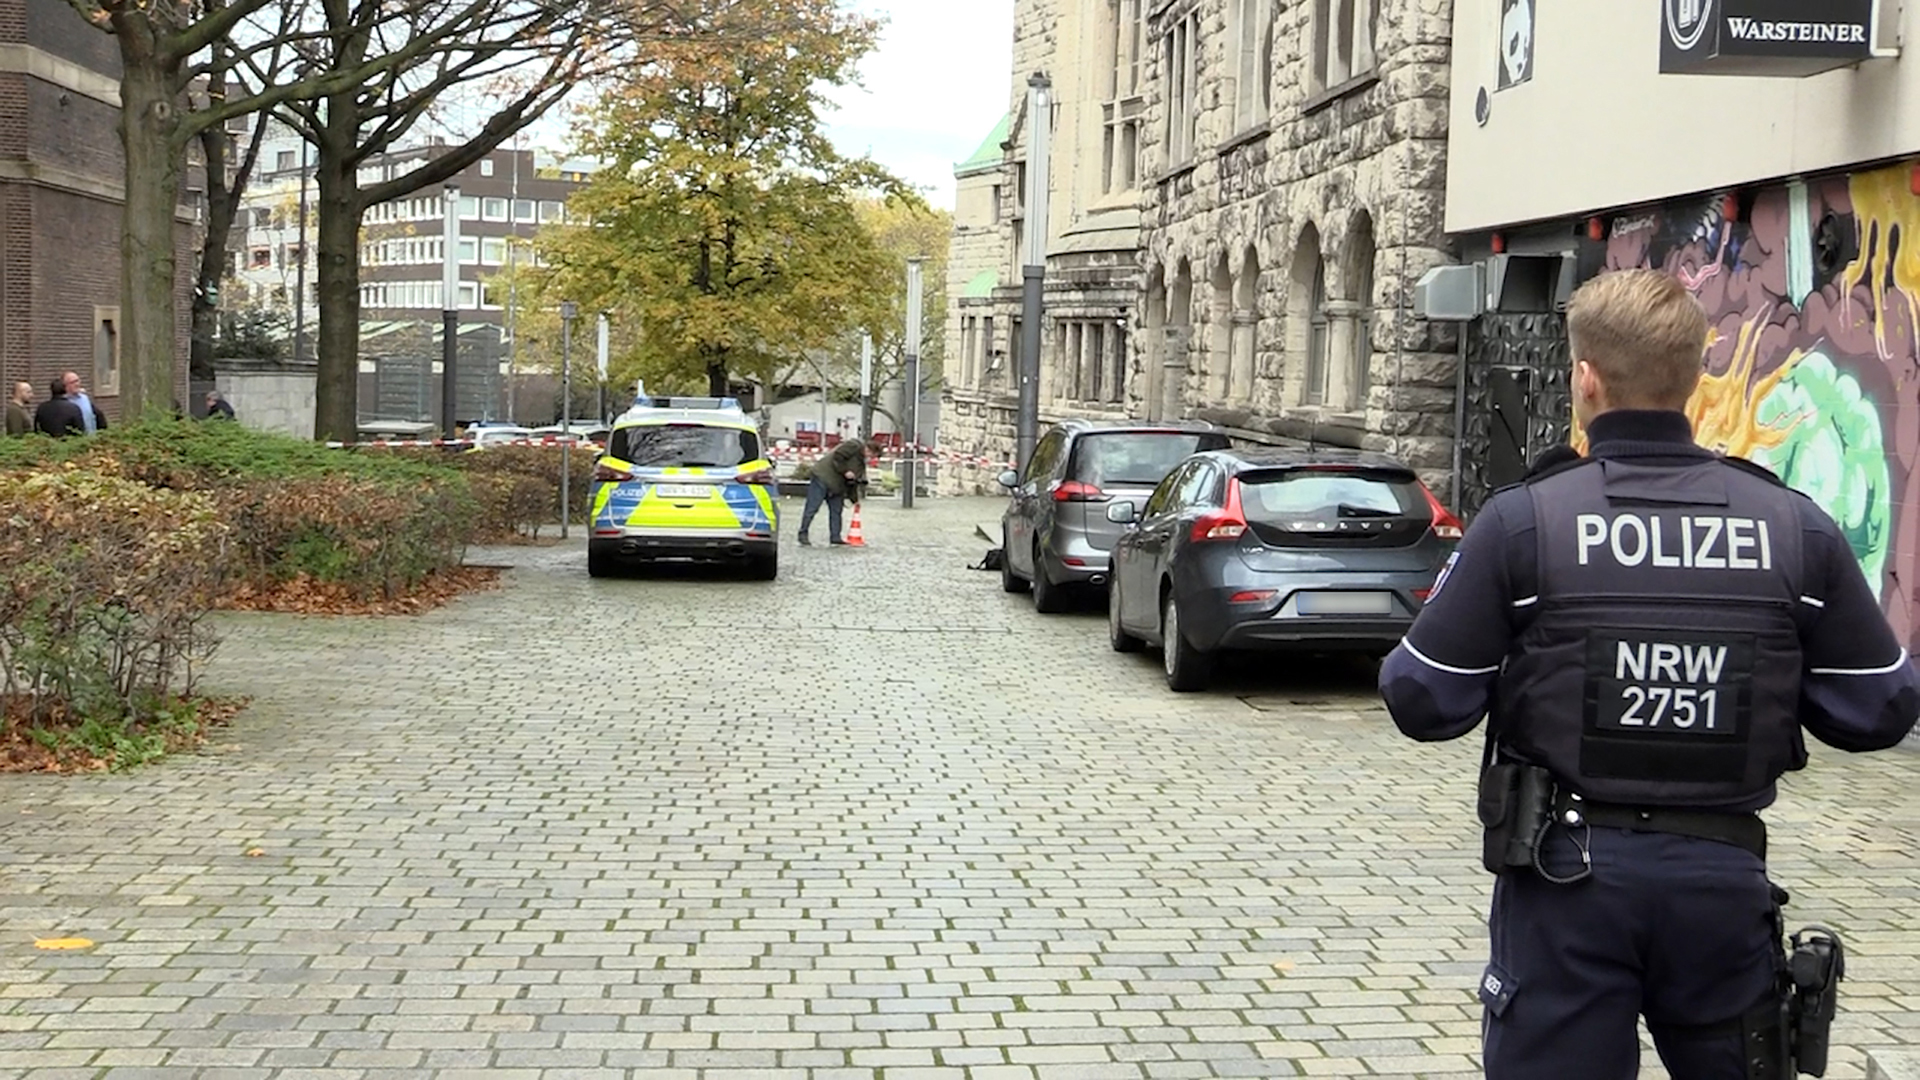 Einsatzkräfte der Polizei stehen am Rabbinerhaus bei der Alten Synagoge in Essen. | picture alliance/dpa/ANC-NEWS